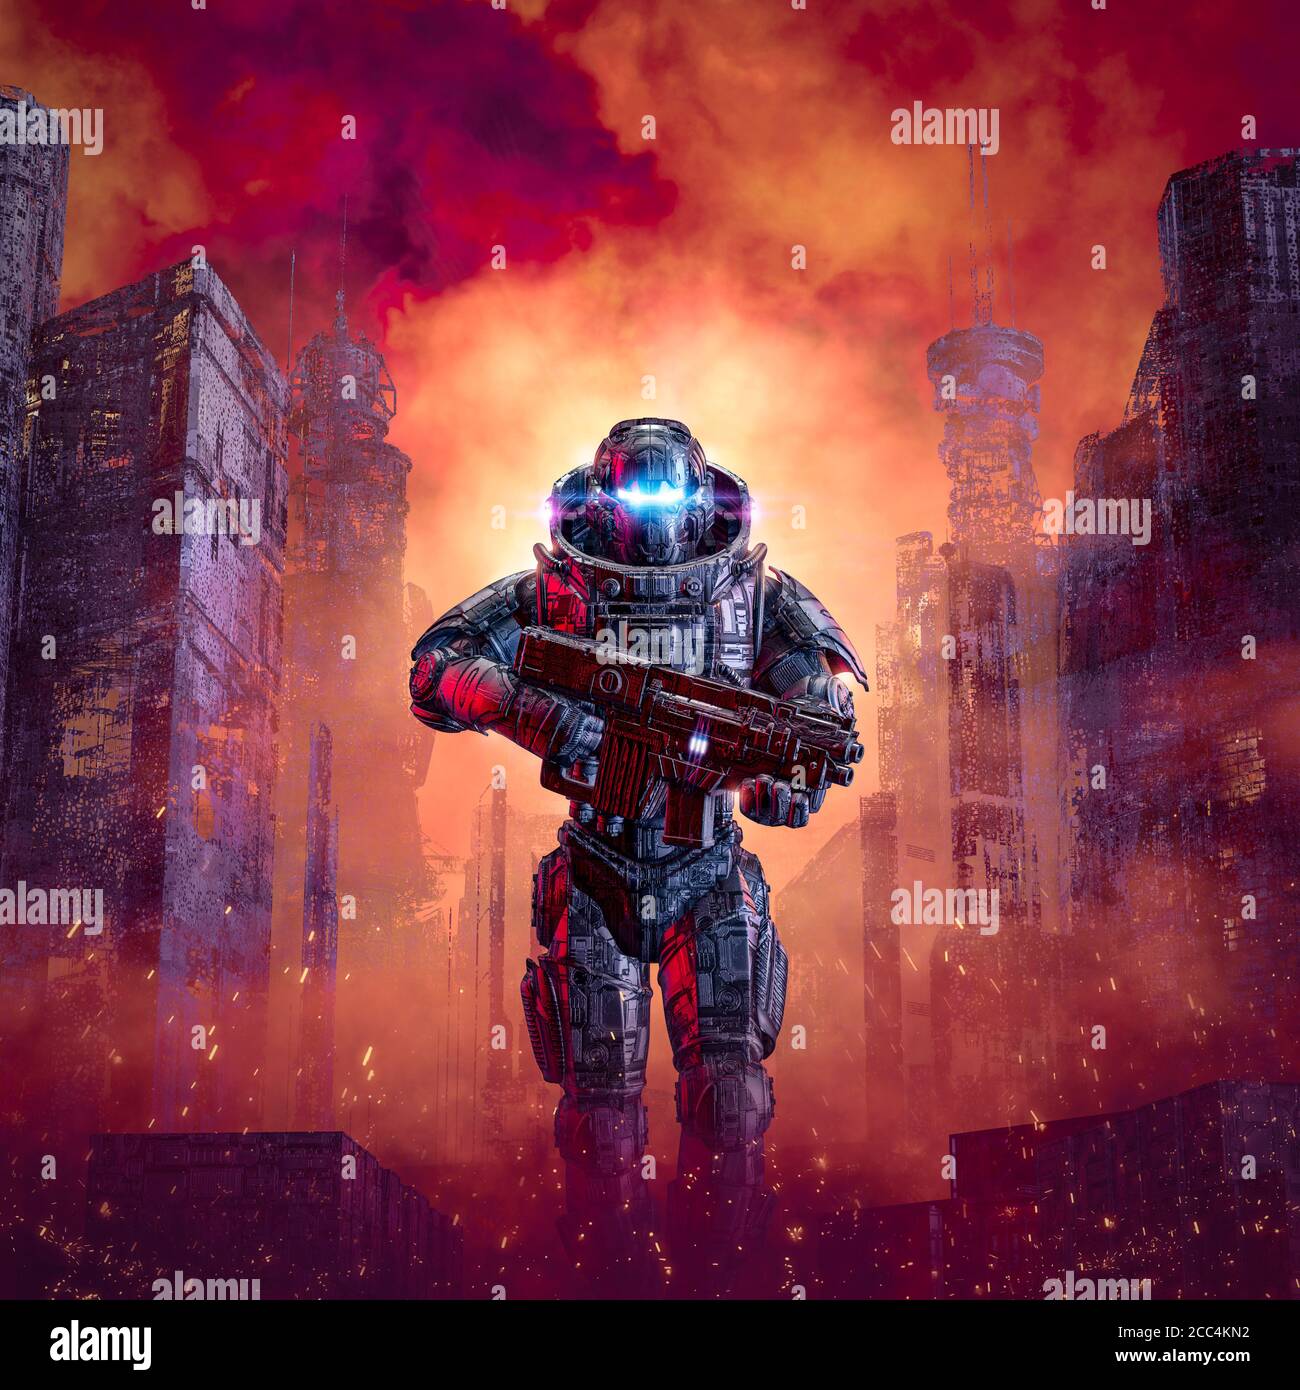 Cyberpunk Soldat Stadt Kriegsführung / 3D-Illustration von Science Fiction Militärische Roboter Krieger patrouillieren Krieg zerrissenen dystopischen Straßen Stockfoto